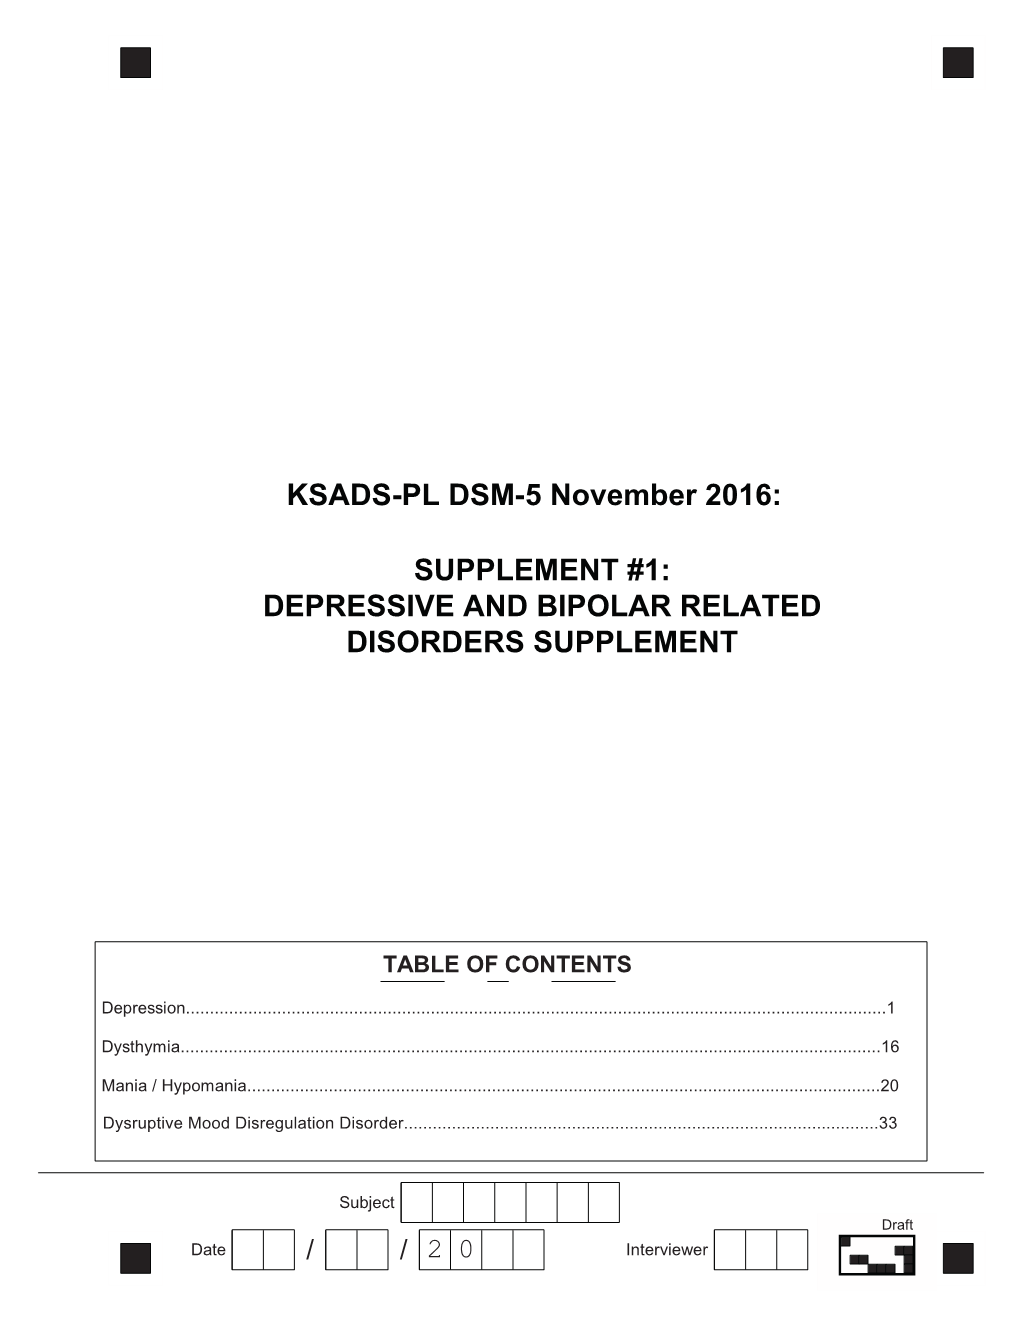 KSADS-PL DSM-5 November 2016: SUPPLEMENT #1